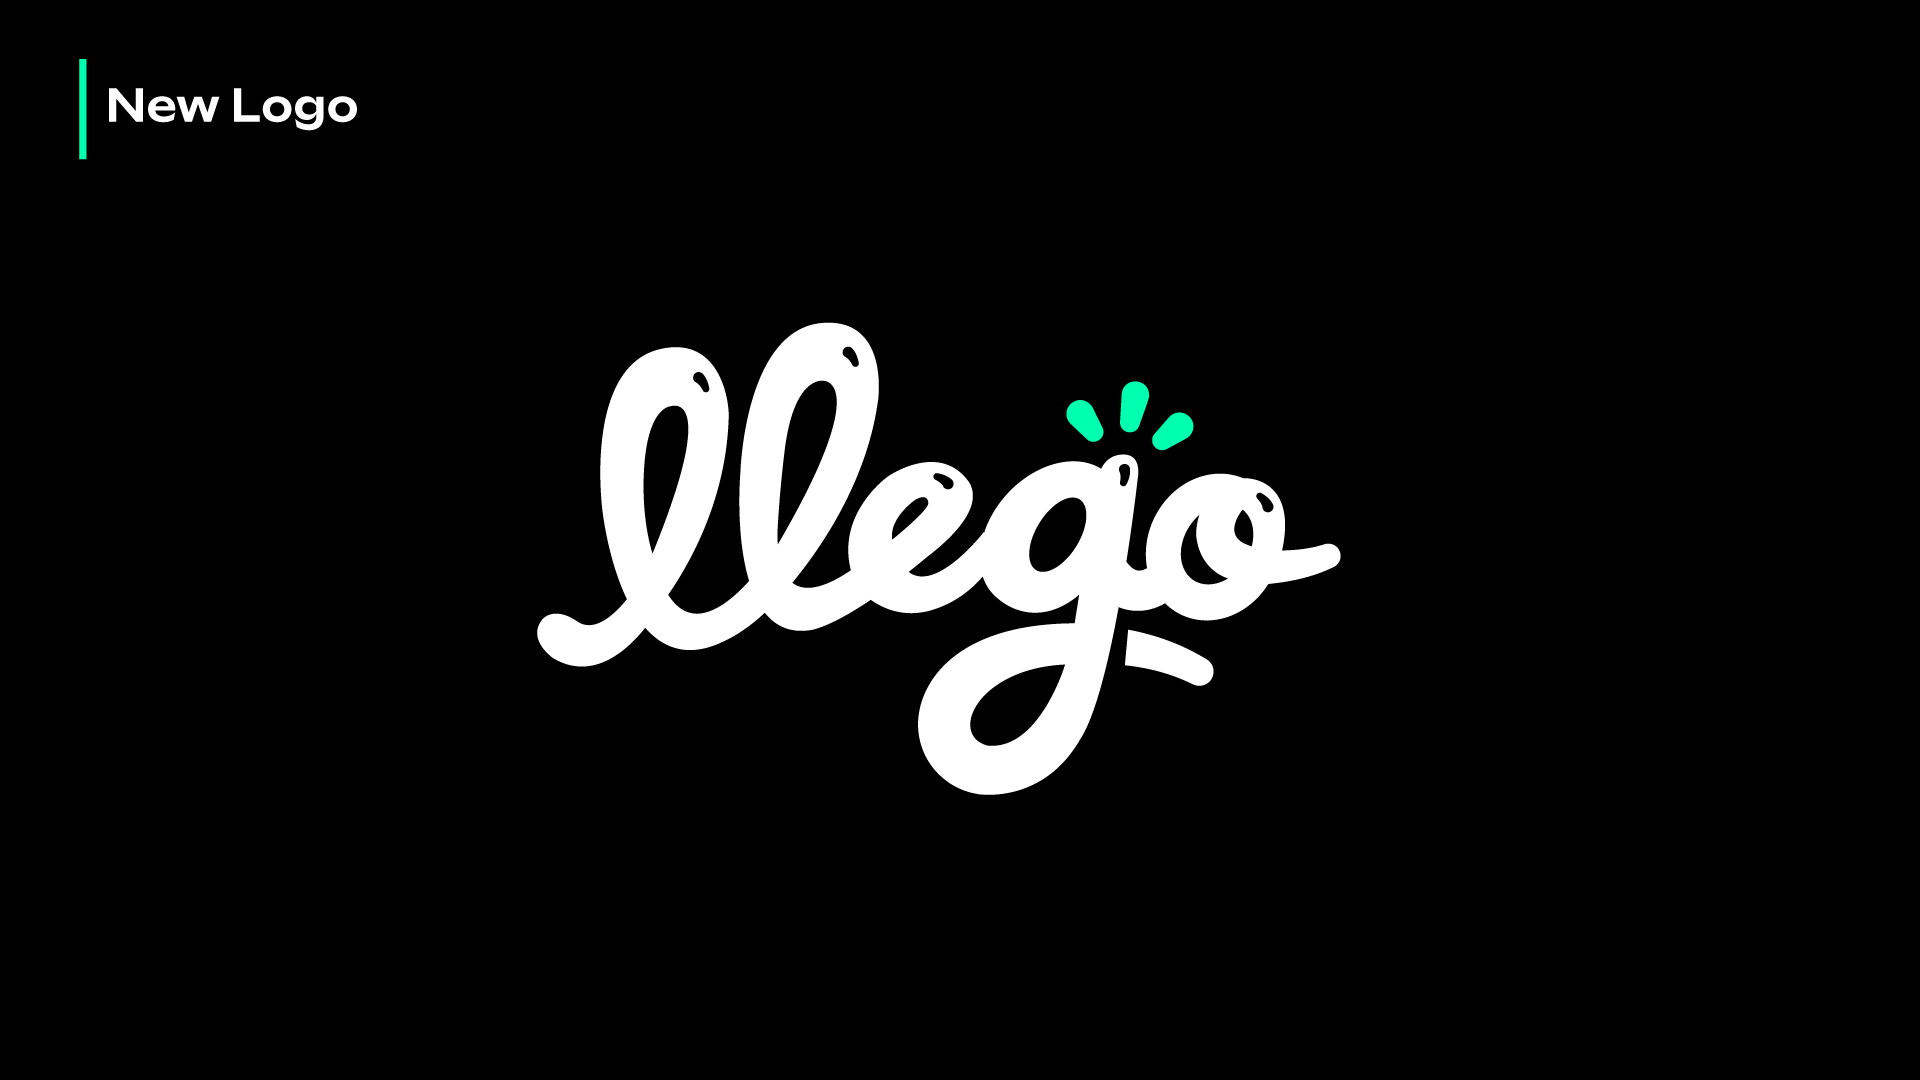 llego-new-logo-1920×1080-1